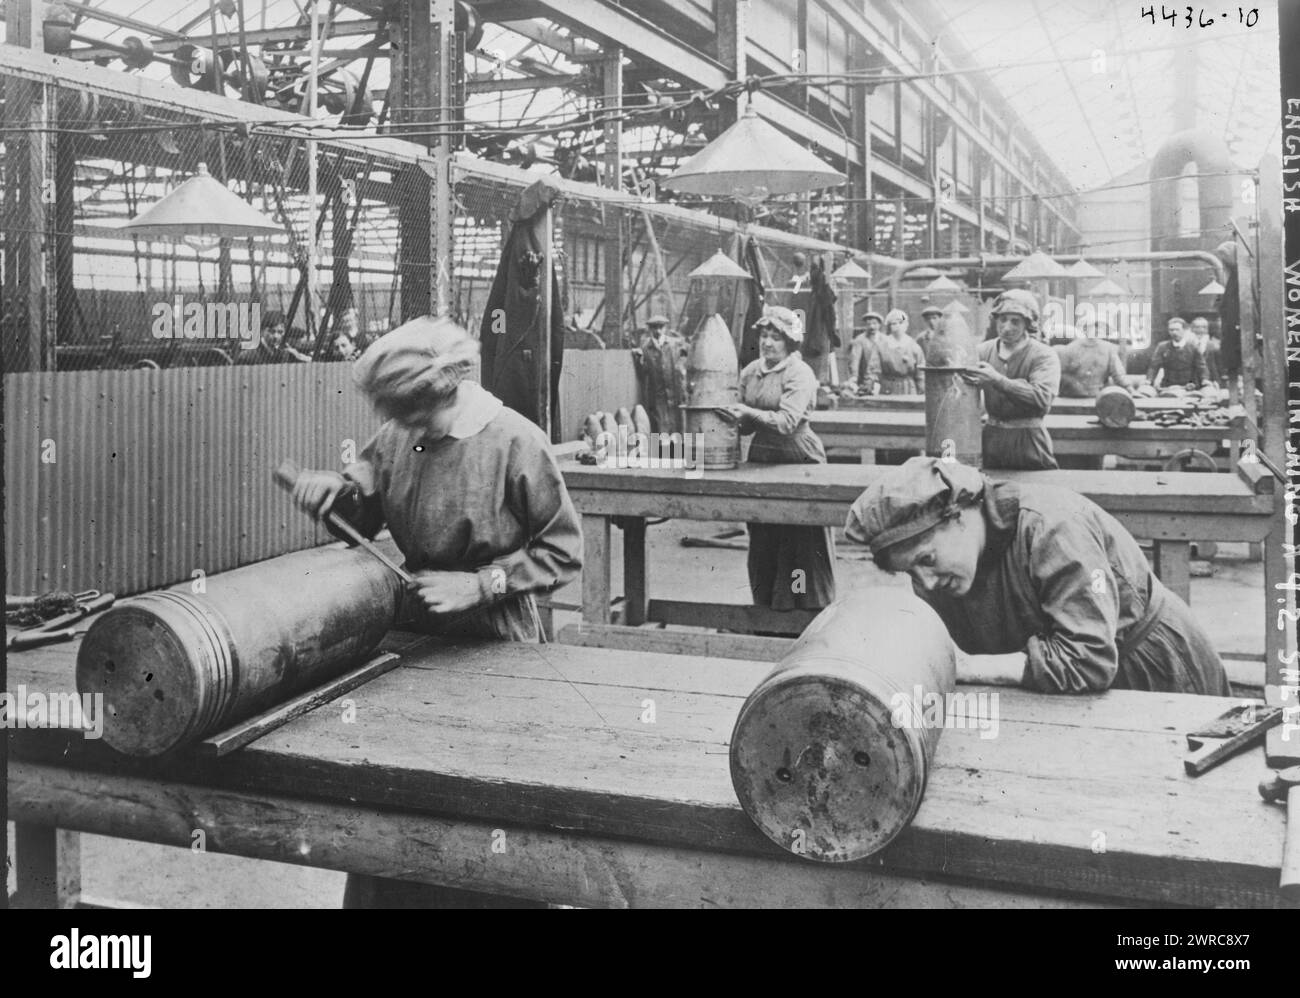 Femmes anglaises finissant un obus de 9,2, la photographie montre des travailleuses inspectant 9,2 obus explosifs dans une usine pendant la première Guerre mondiale, entre env. 1915 et 1917, Guerre mondiale, 1914-1918, négatifs en verre, 1 négatif : verre Banque D'Images